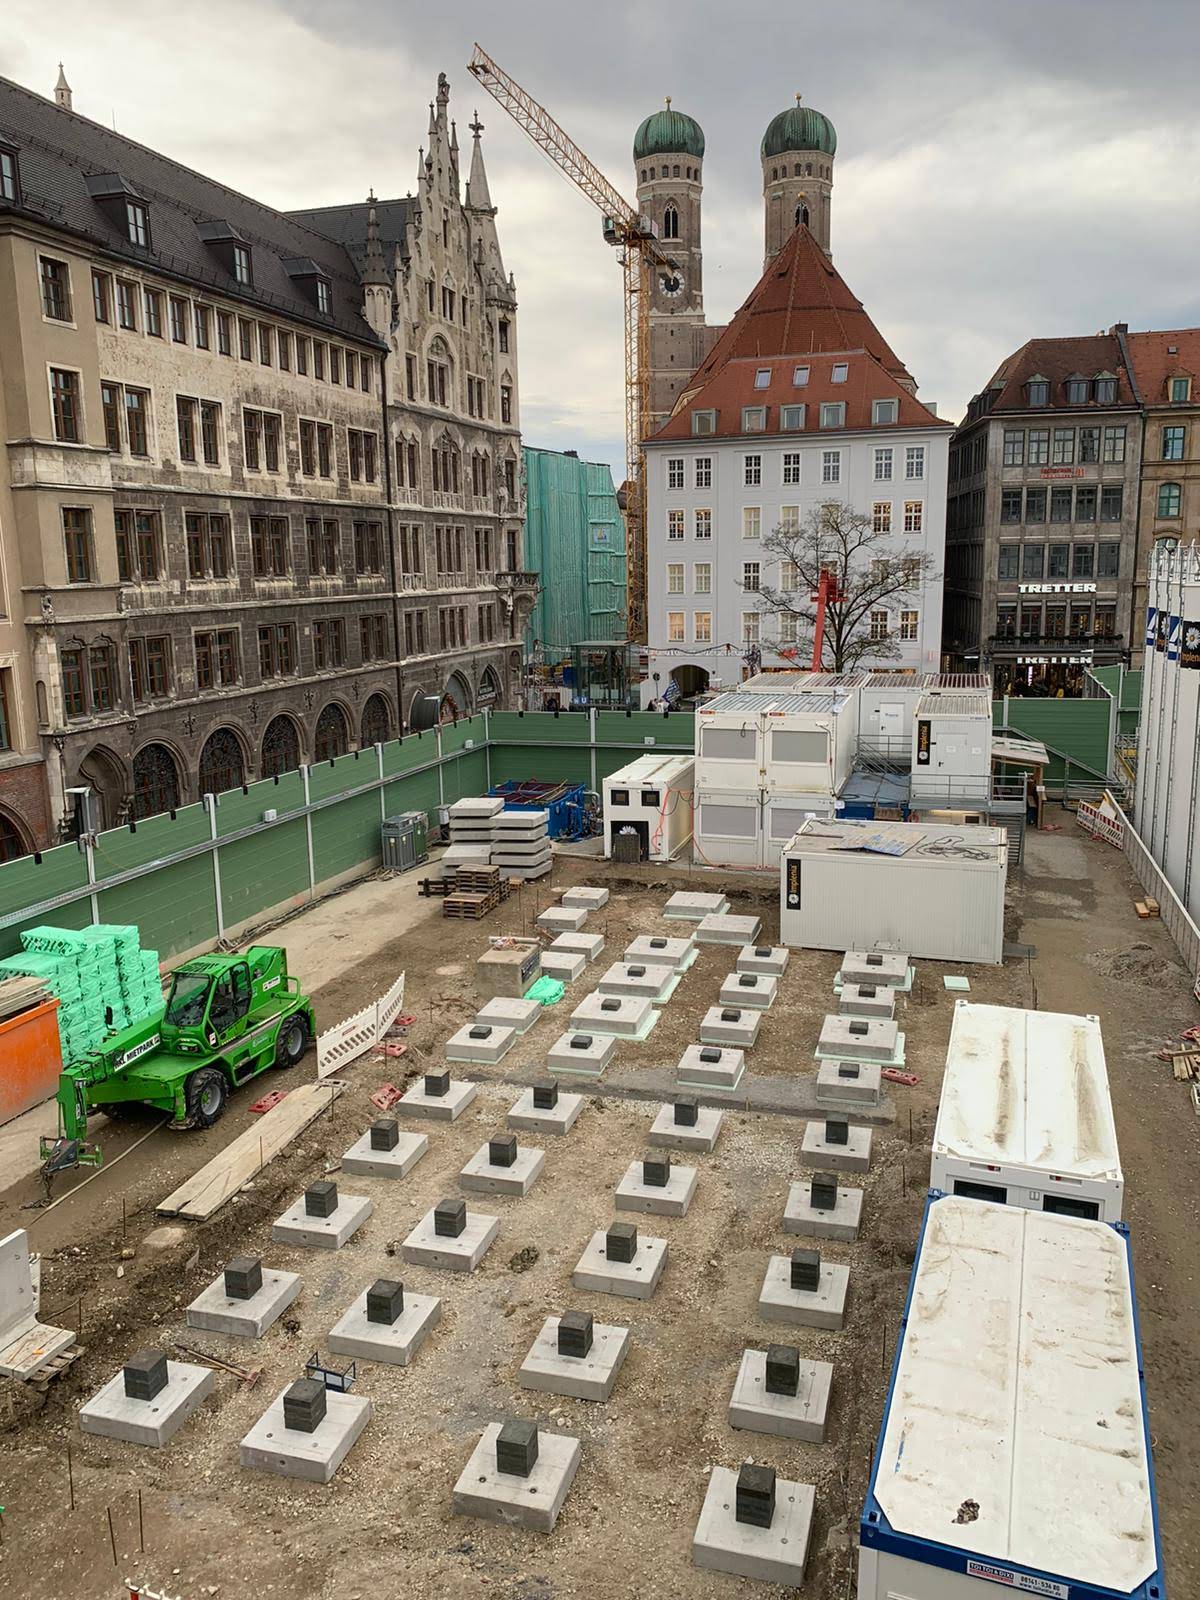 Umbau der Stammstrecke München VE 41, München, Marienhof